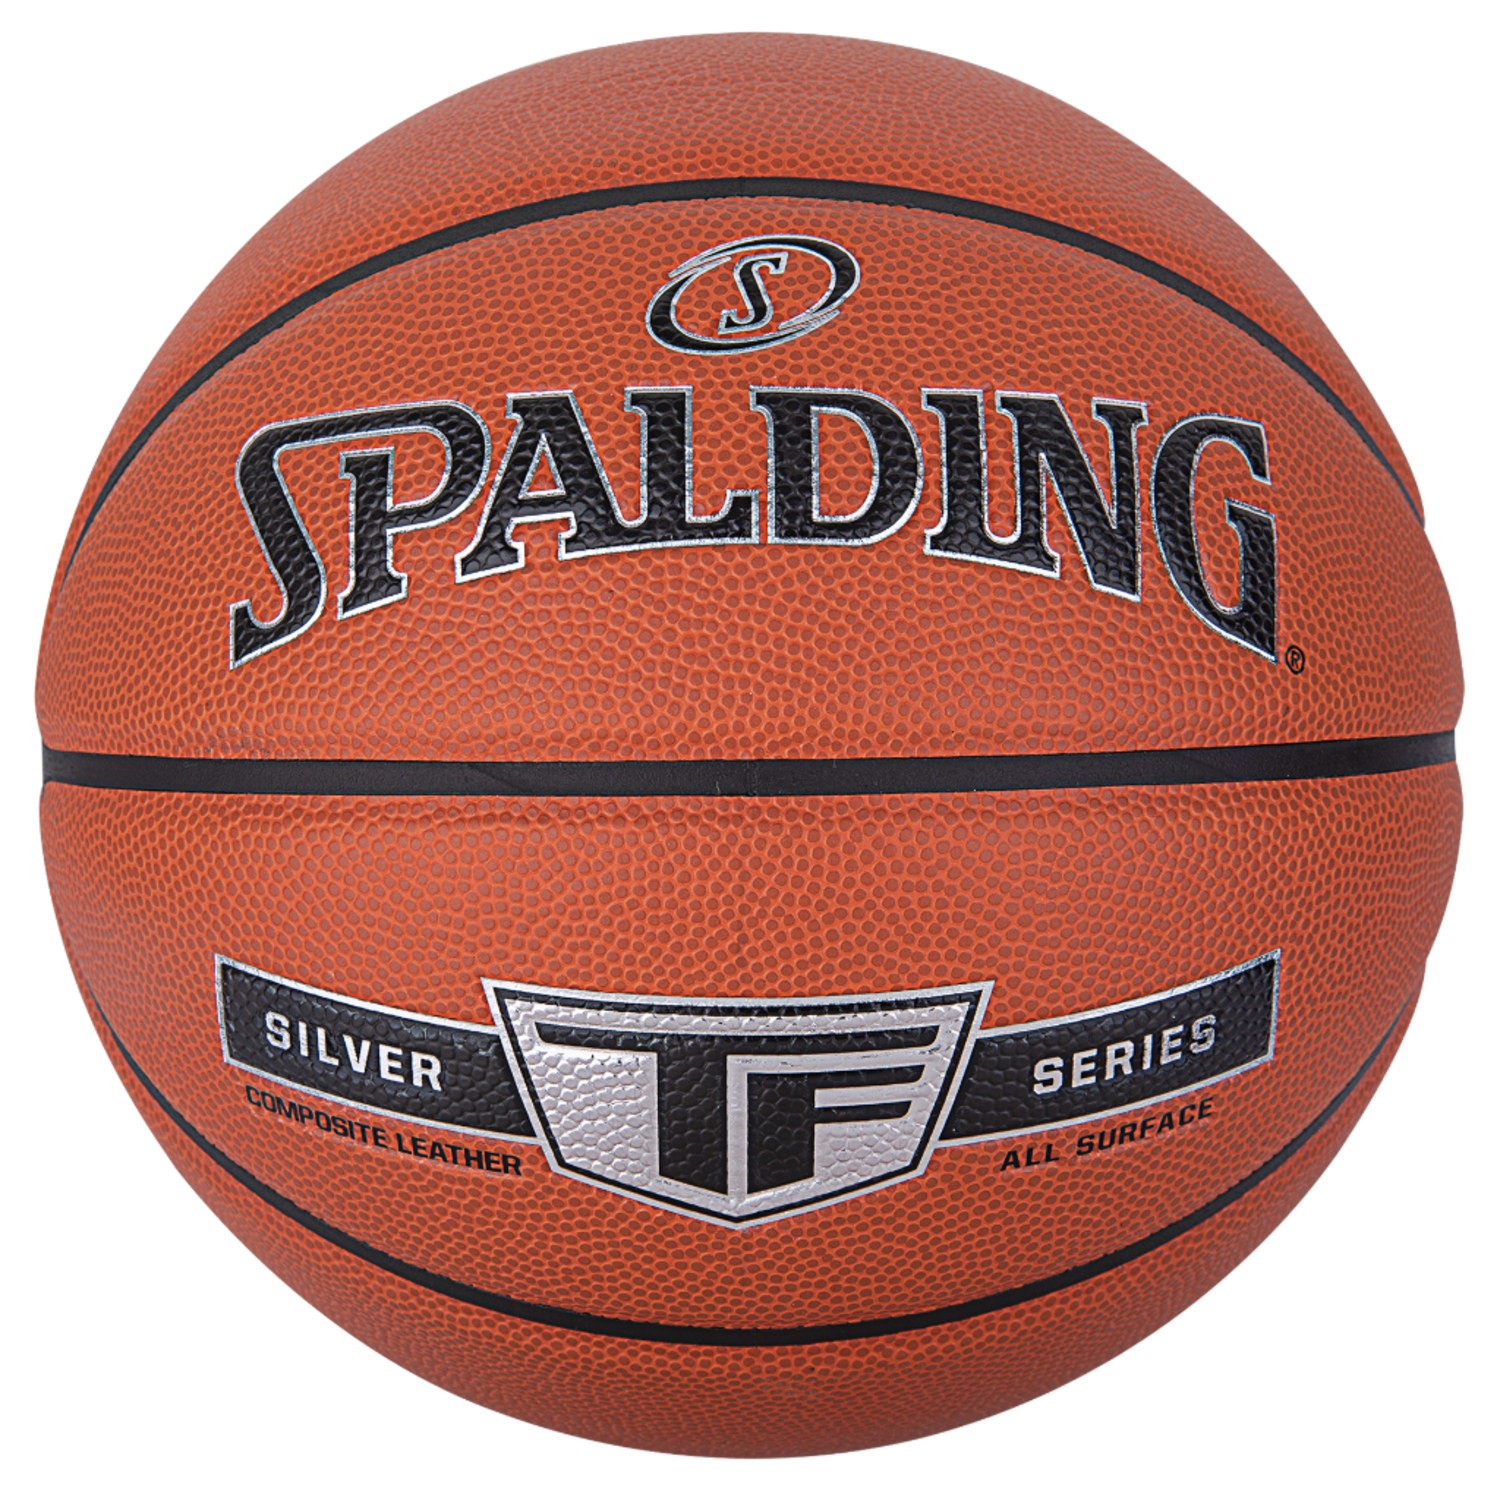 Spalding Silver Indoor/Outdoor Basketbal (7) - Burned Sports